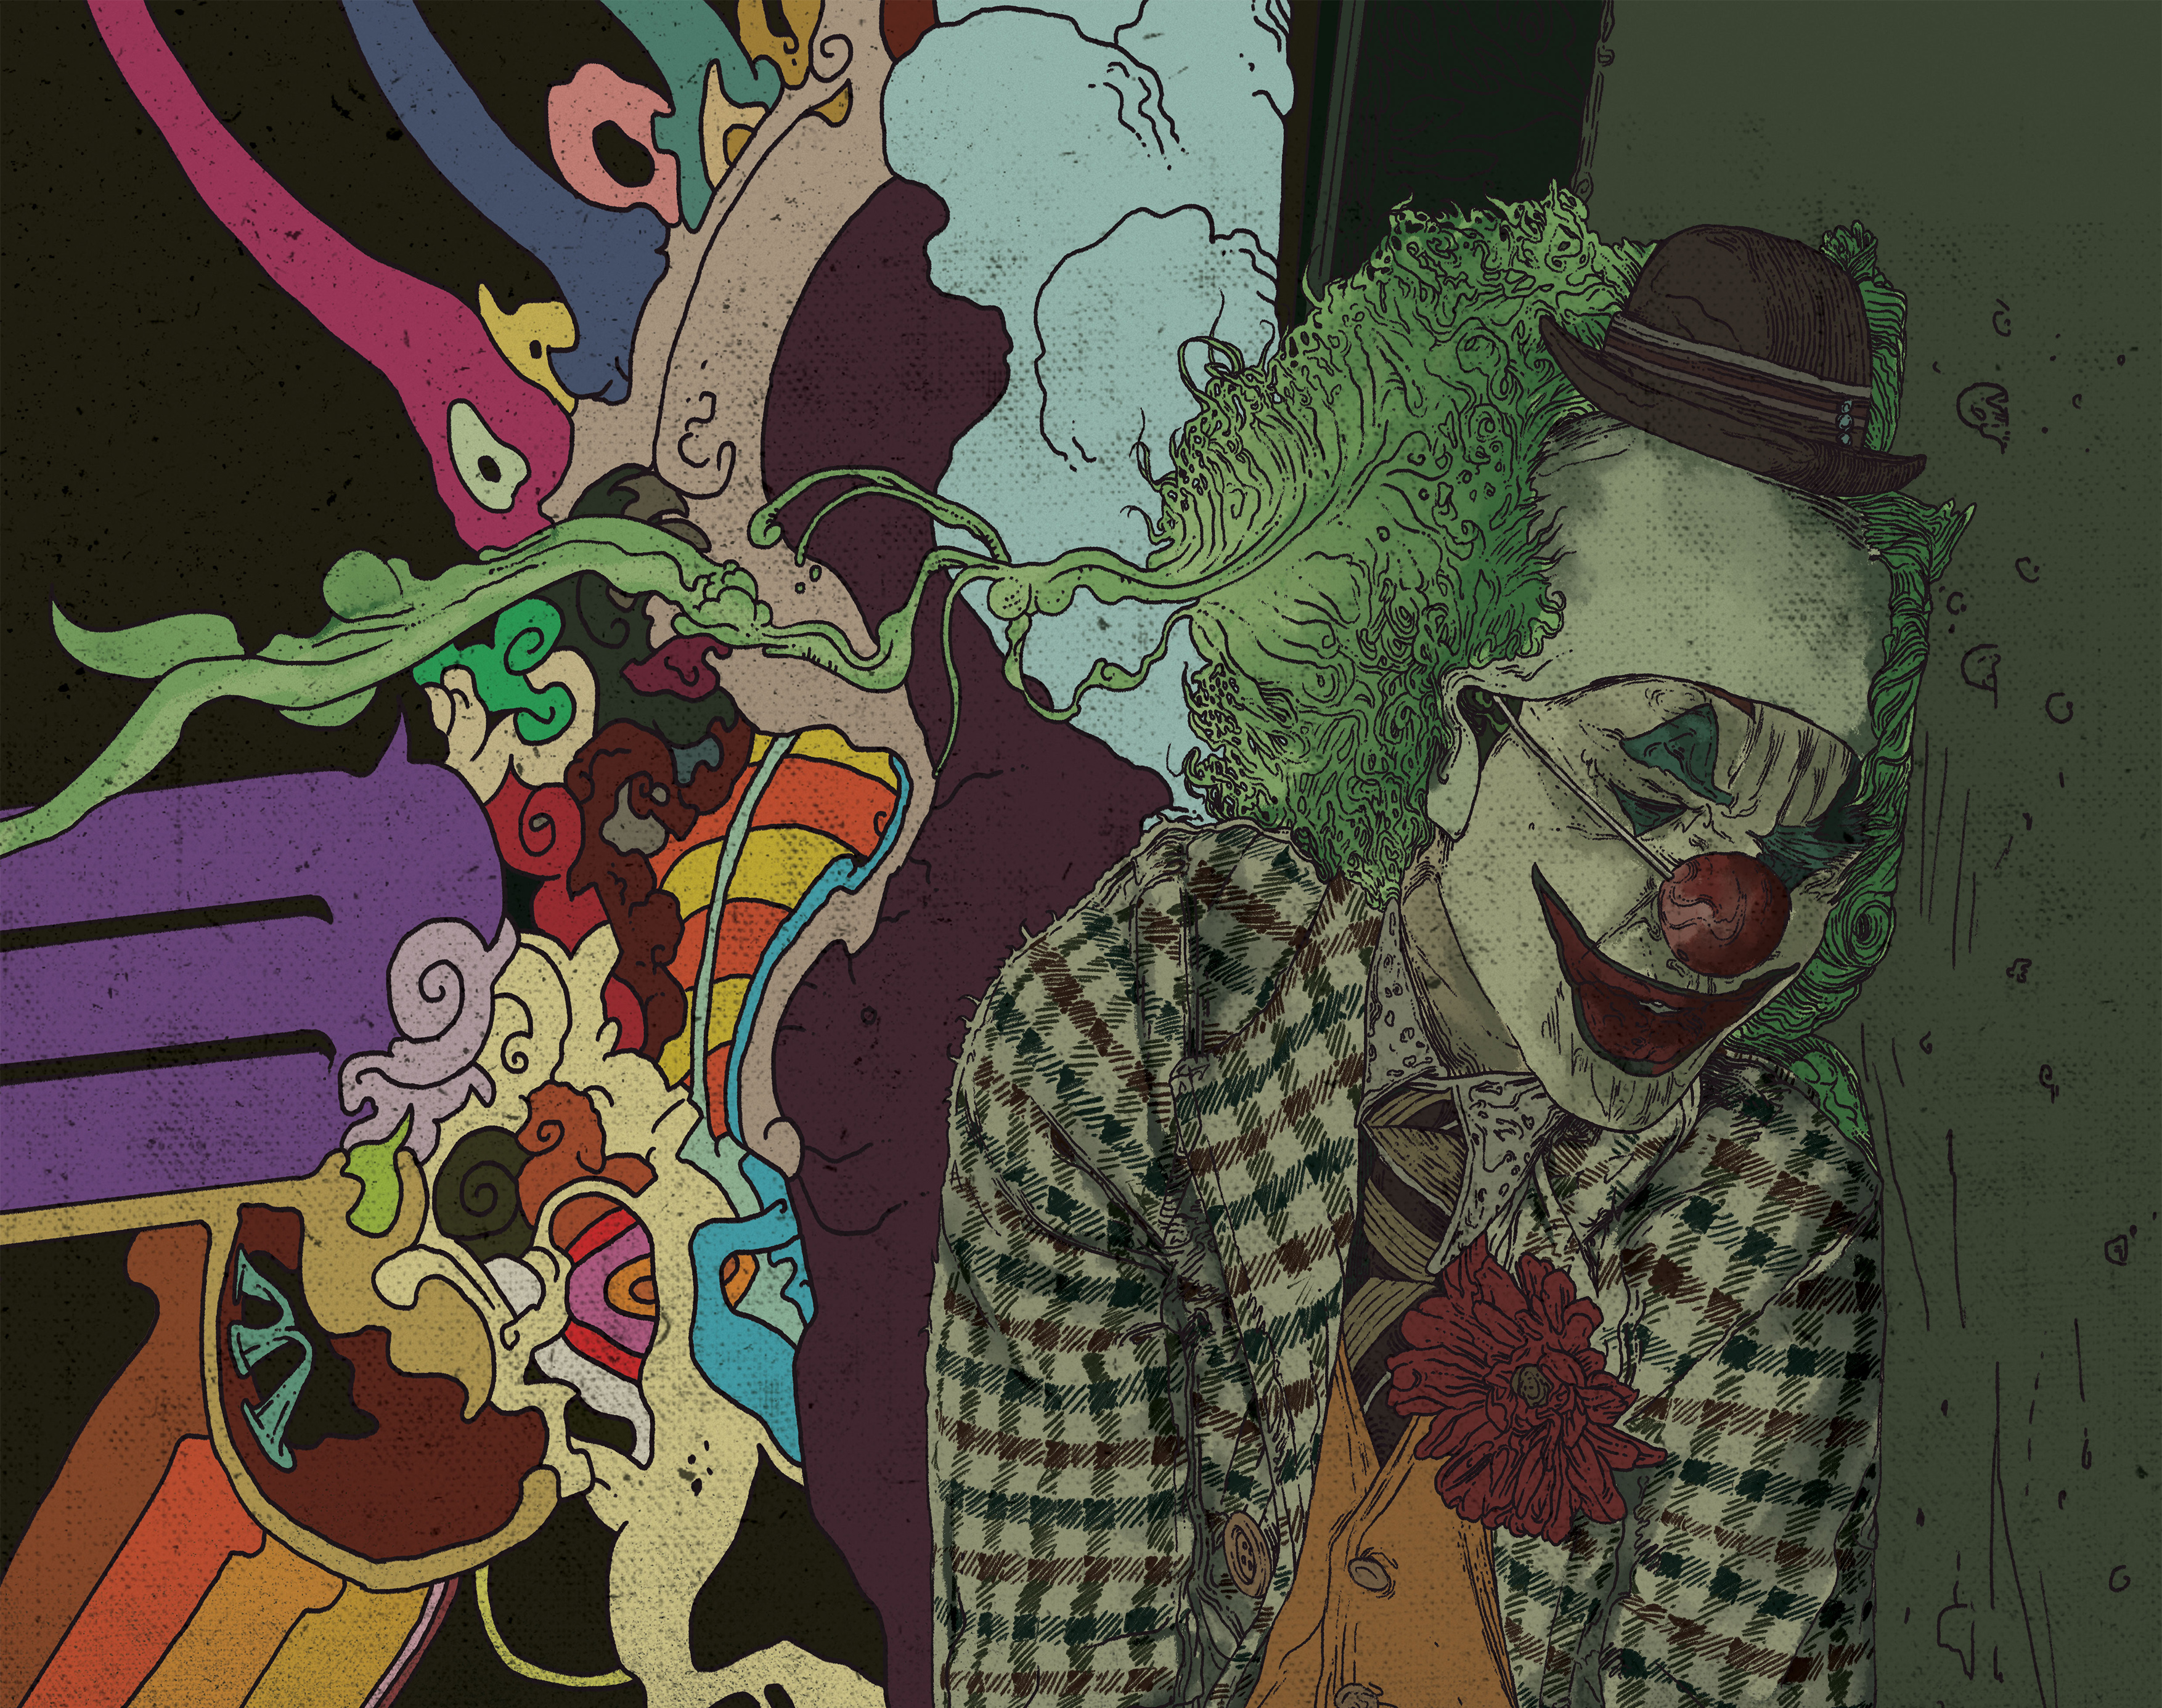 Handy-Wallpaper Joker, Filme, Dc Comics kostenlos herunterladen.